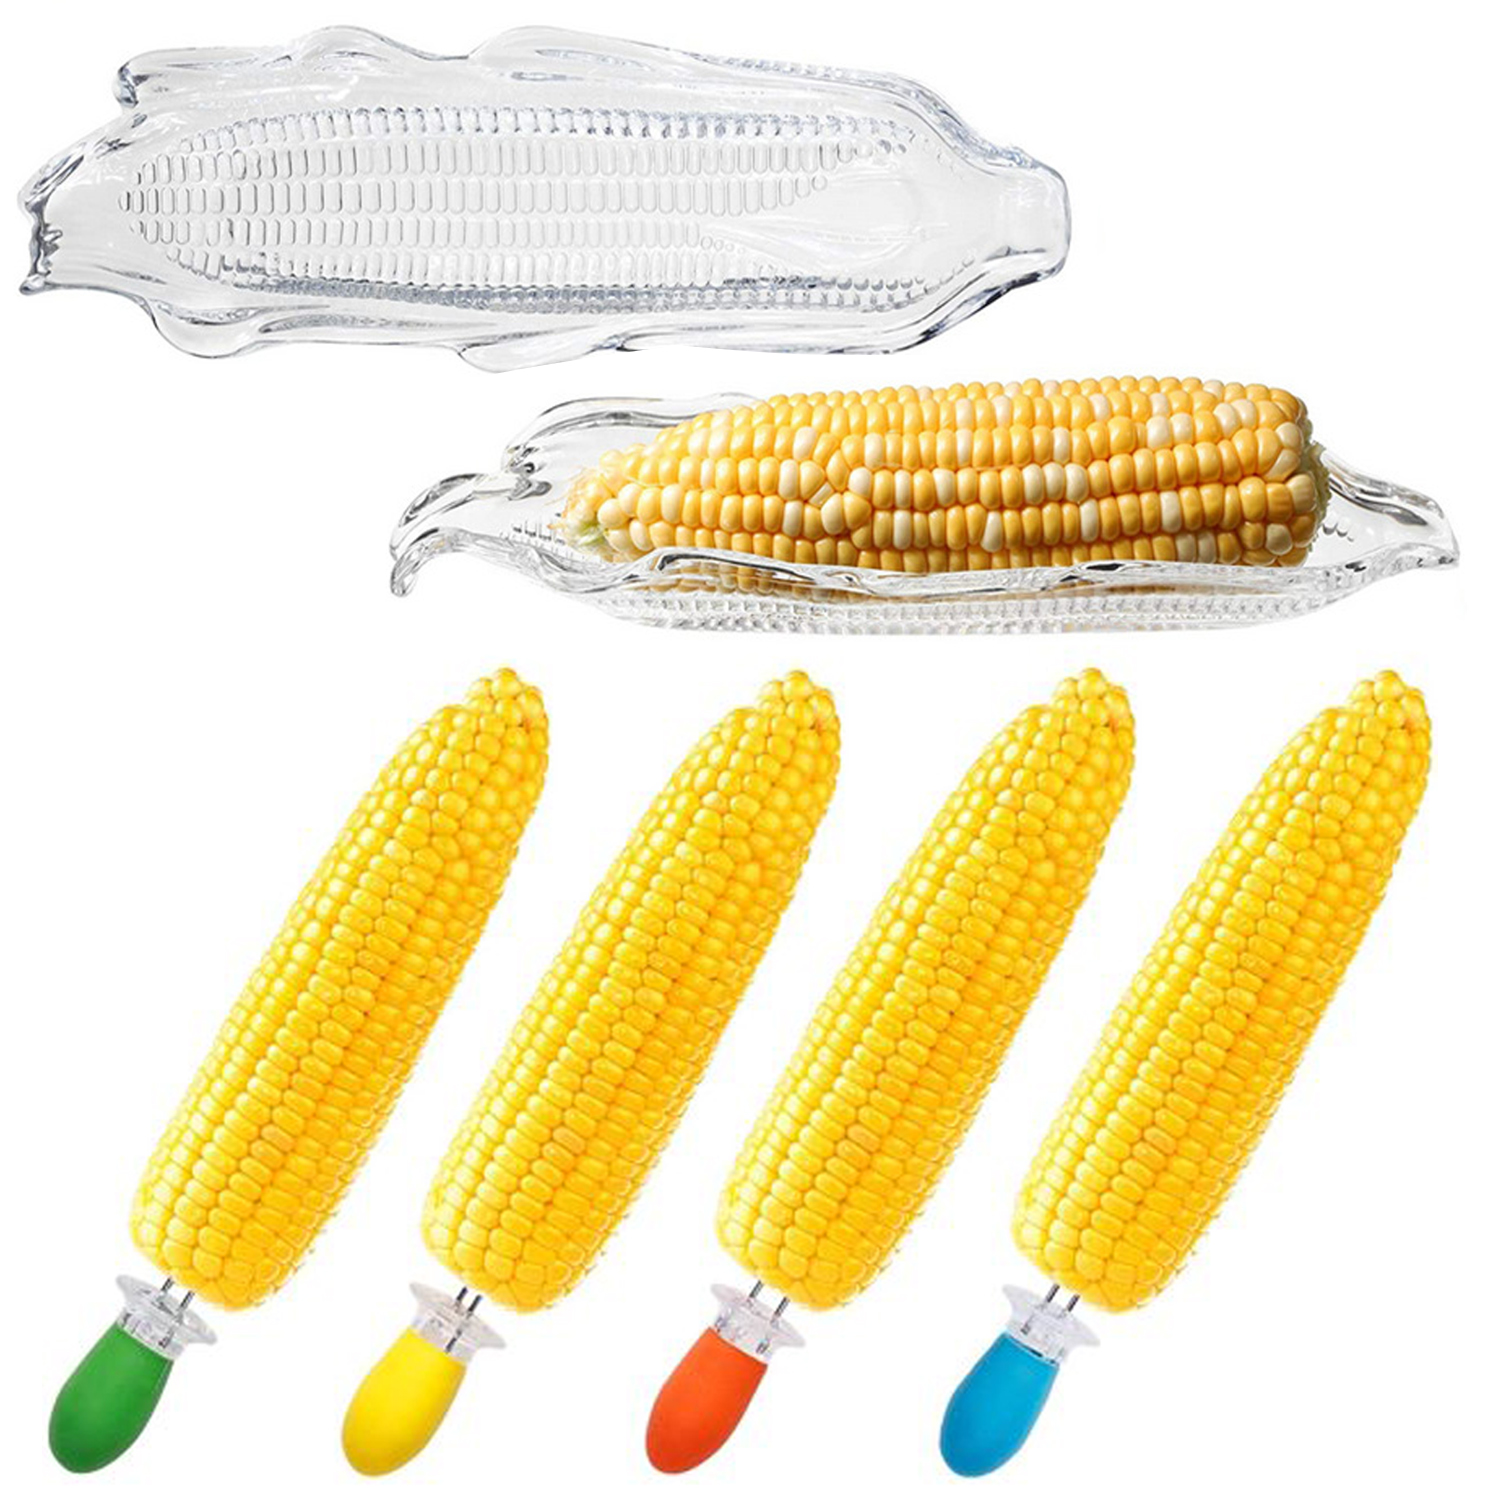 2 bandejas de plástico para maíz, 2 soportes para barbacoa de maíz de doble punta para platos de maíz y kits de mantequilla, paquete de 4